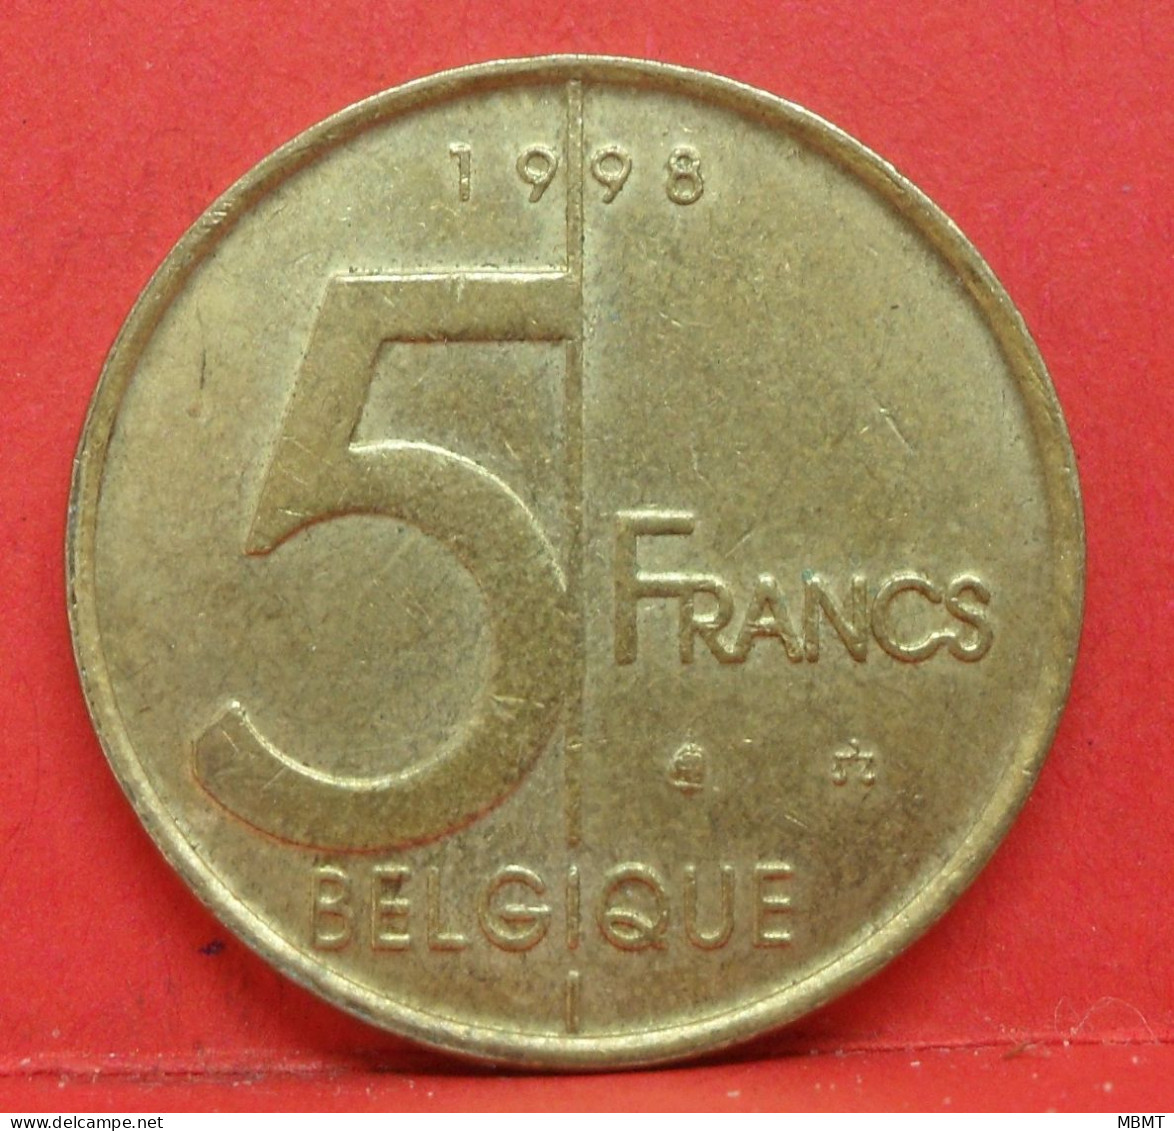 5 Francs 1998 - TTB - Pièce Monnaie Belgique - Article N°1836 - 5 Frank